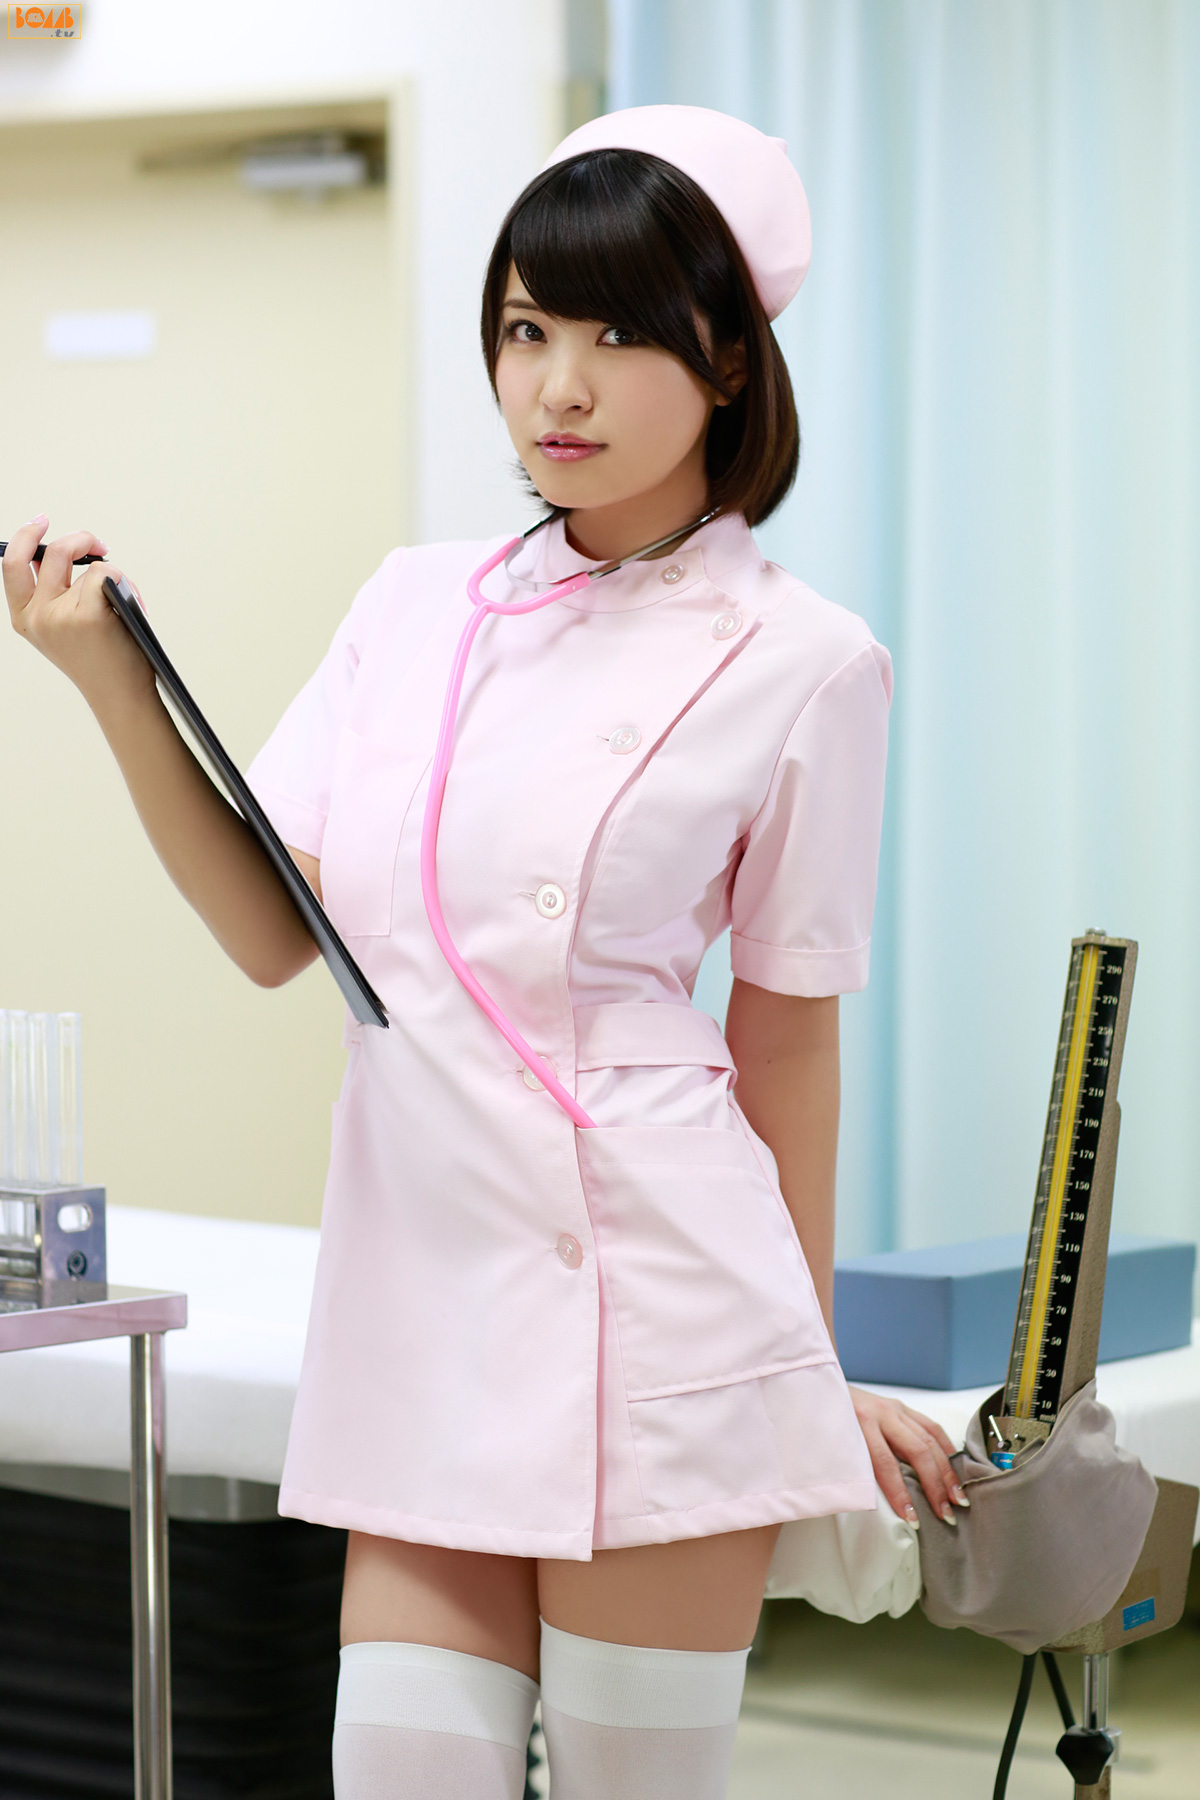 Japanese femdom nurse